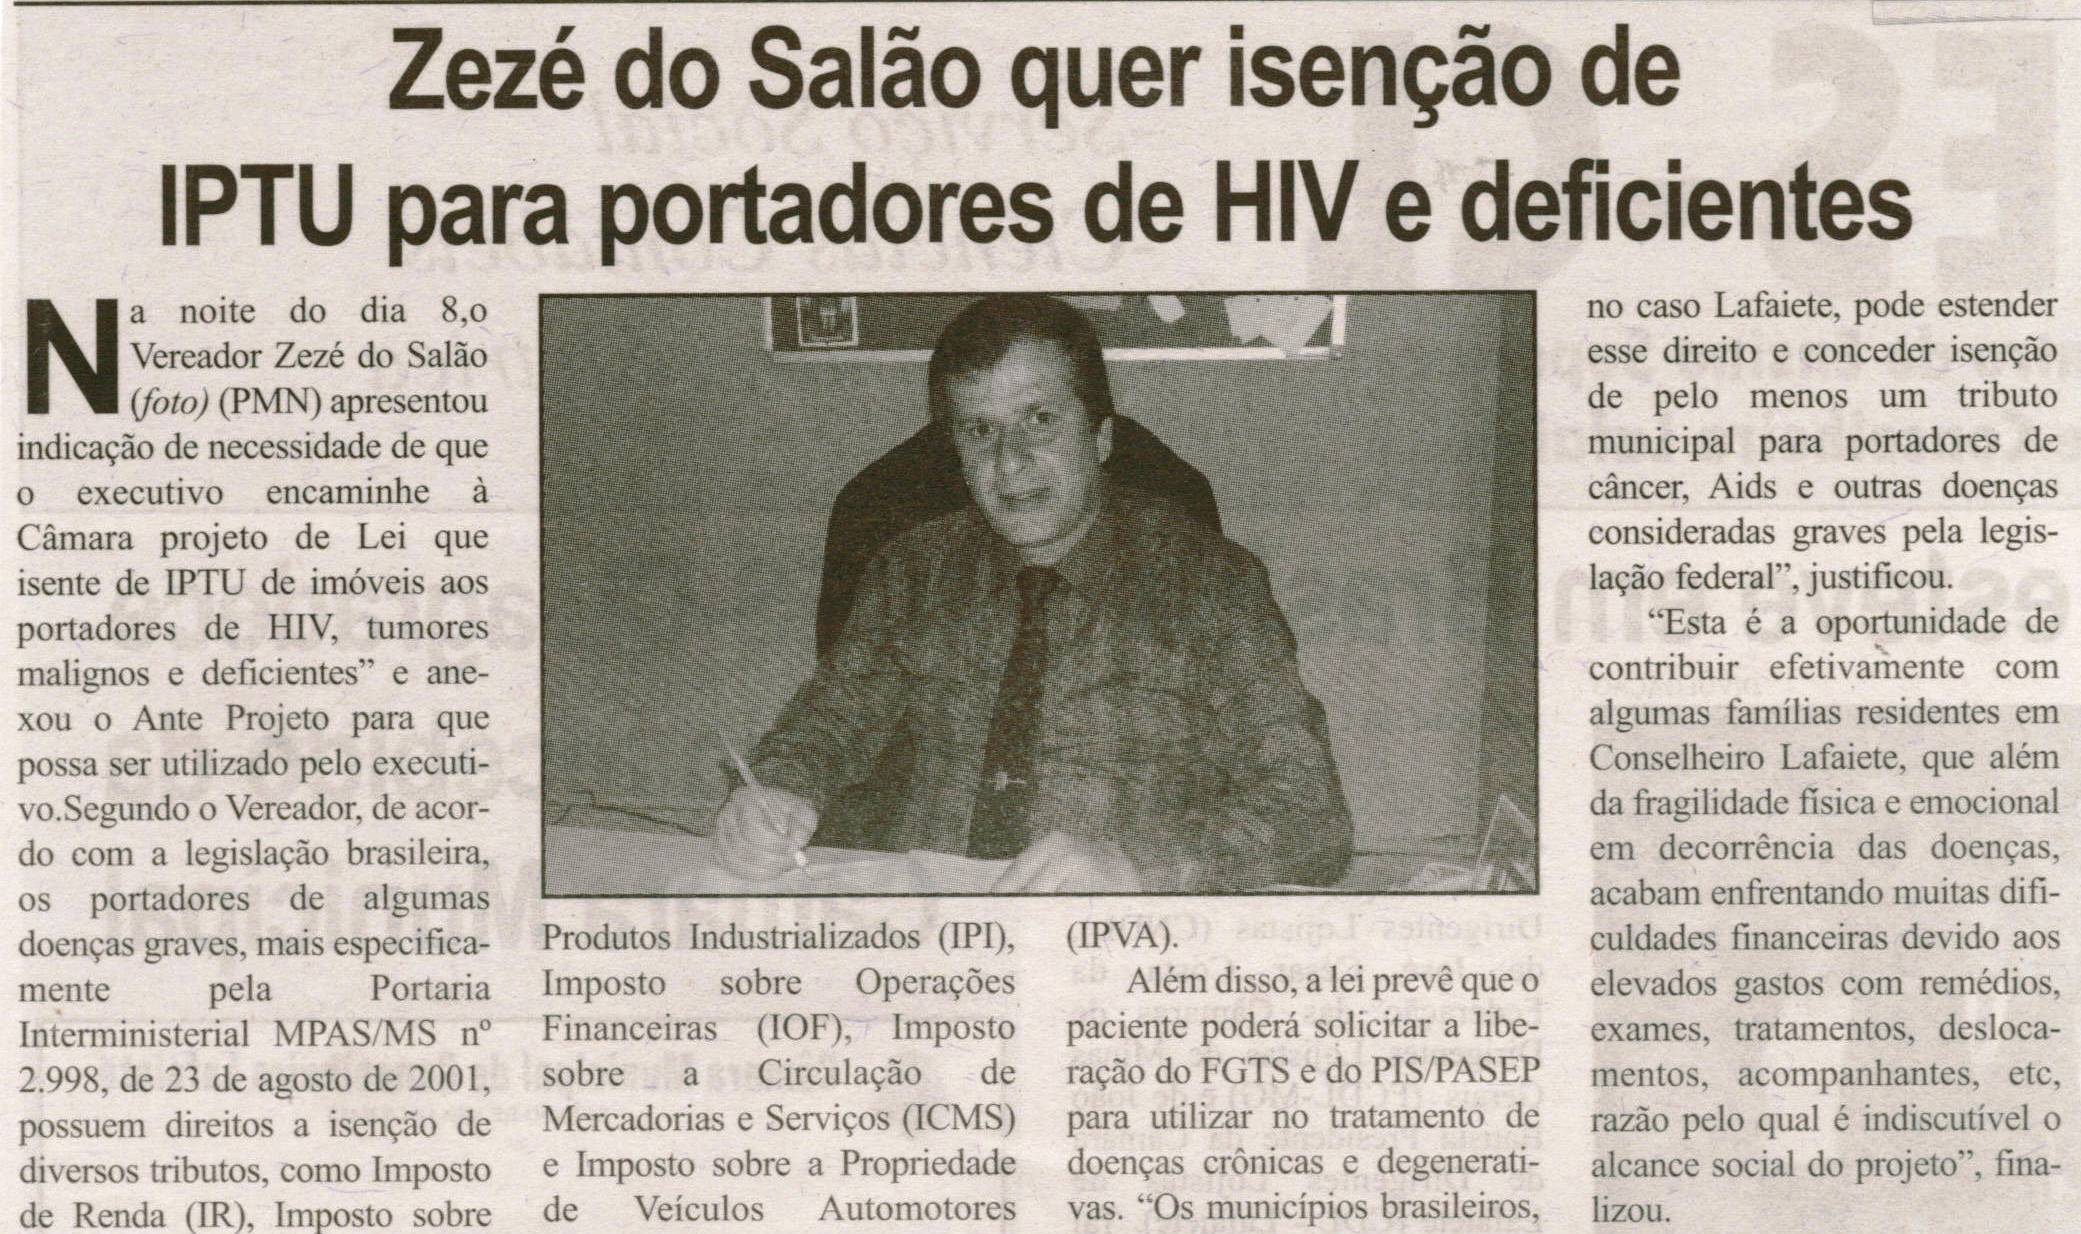 Zezé do Salão quer isenção de IPTU para portadores de HIV e deficientes. Correio de Minas, Conselheiro Lafaiete, 10 out. 2013, p. 07.